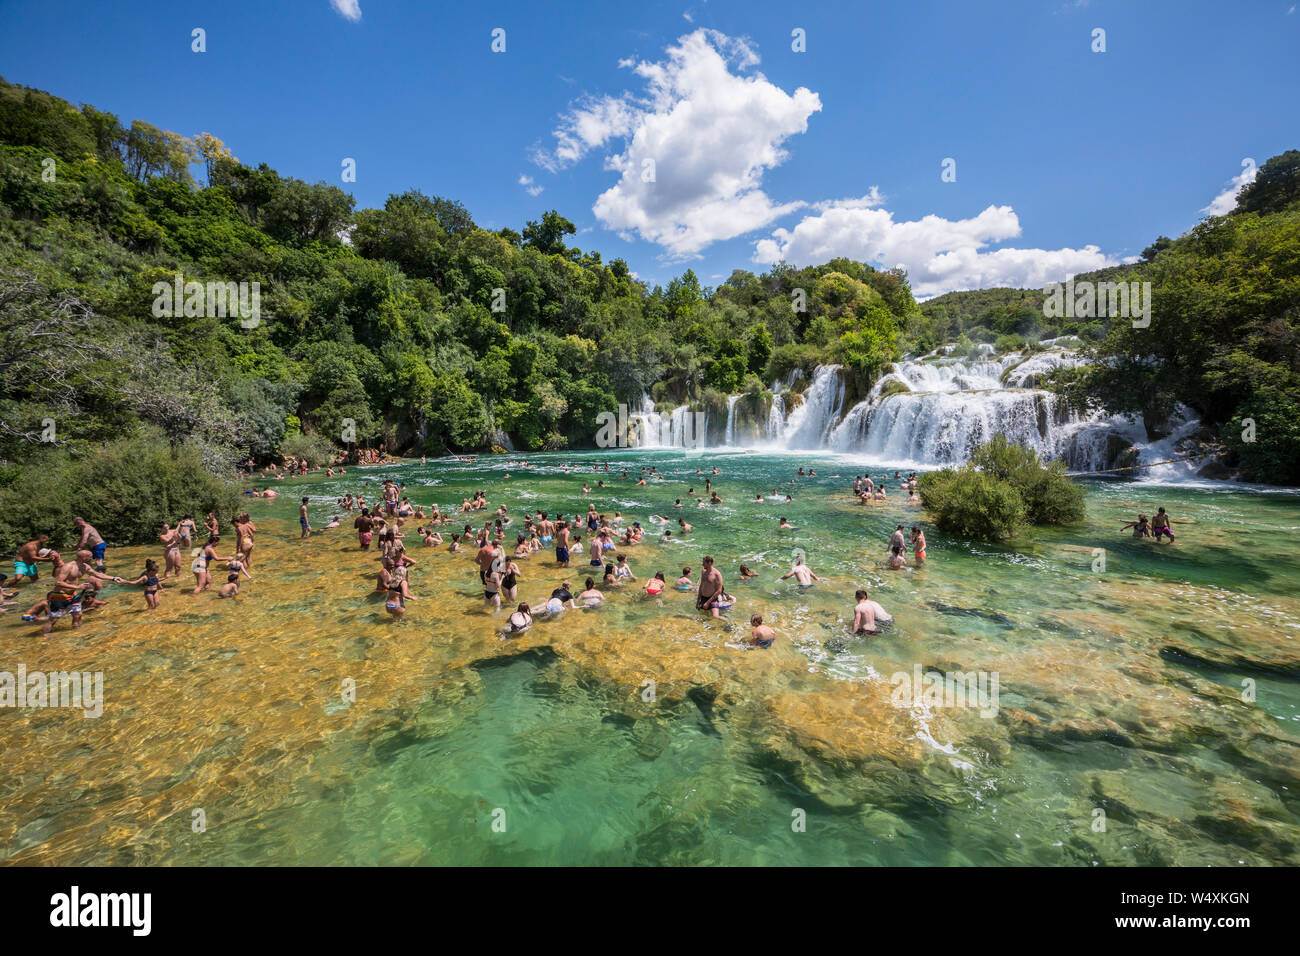 Turisti che si godono in watterfalls del parco nazionale di Krka in Croazia Foto Stock